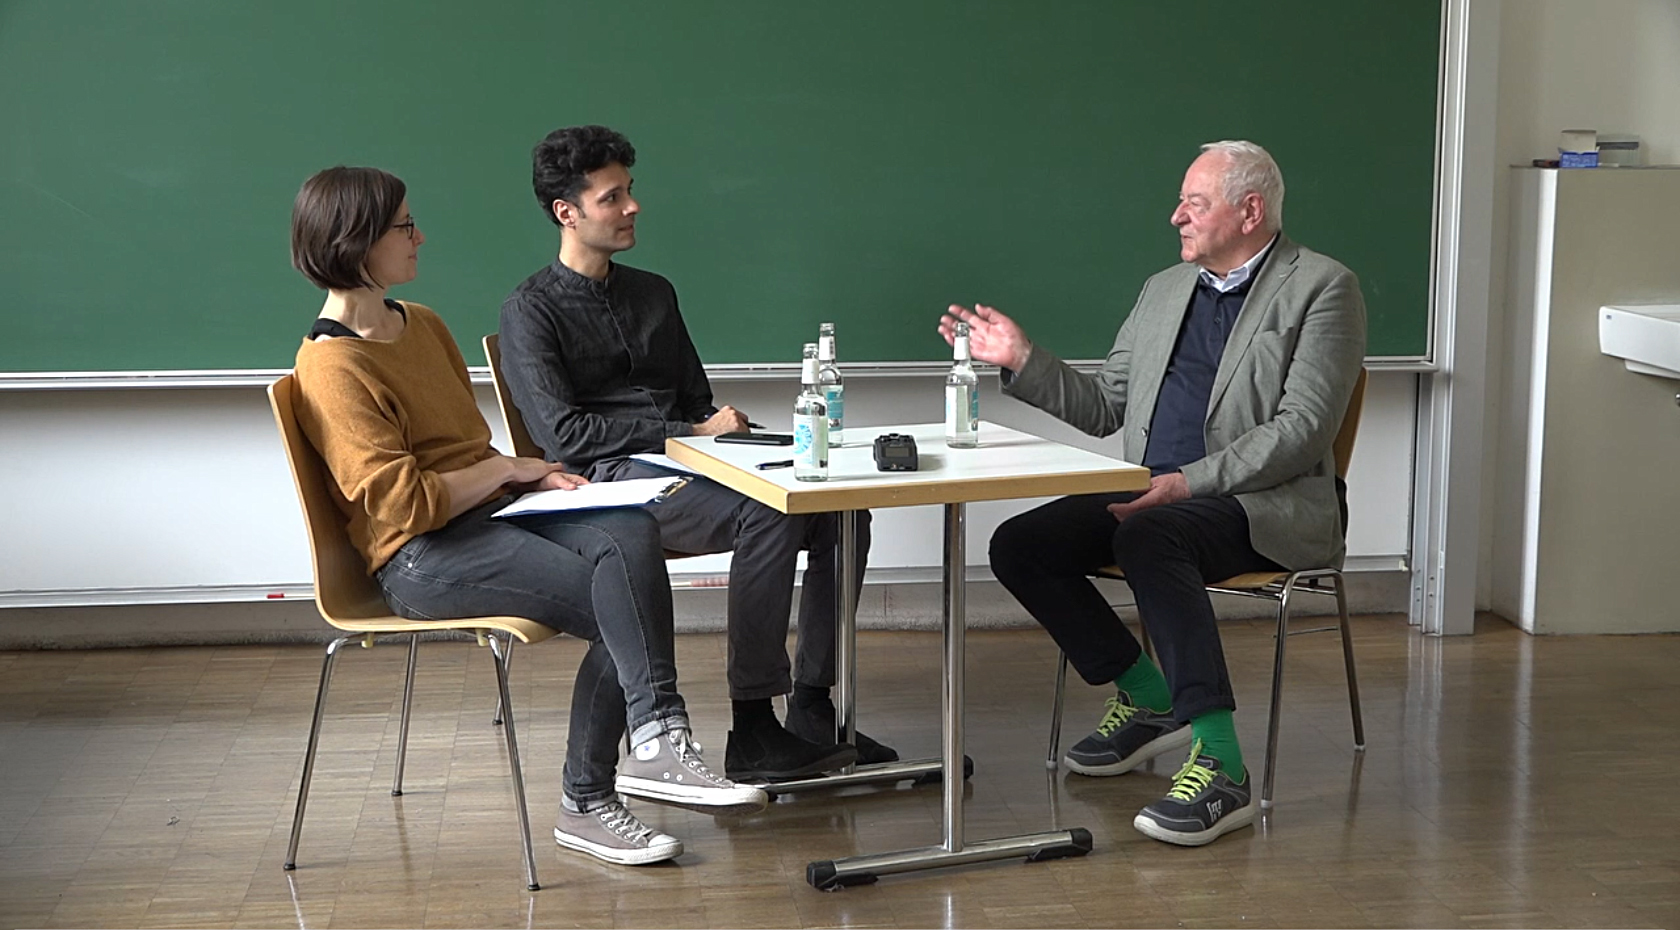 Interview mit Erich Gantzert-Castrillo, 3 Personen sitzen an einem Tisch